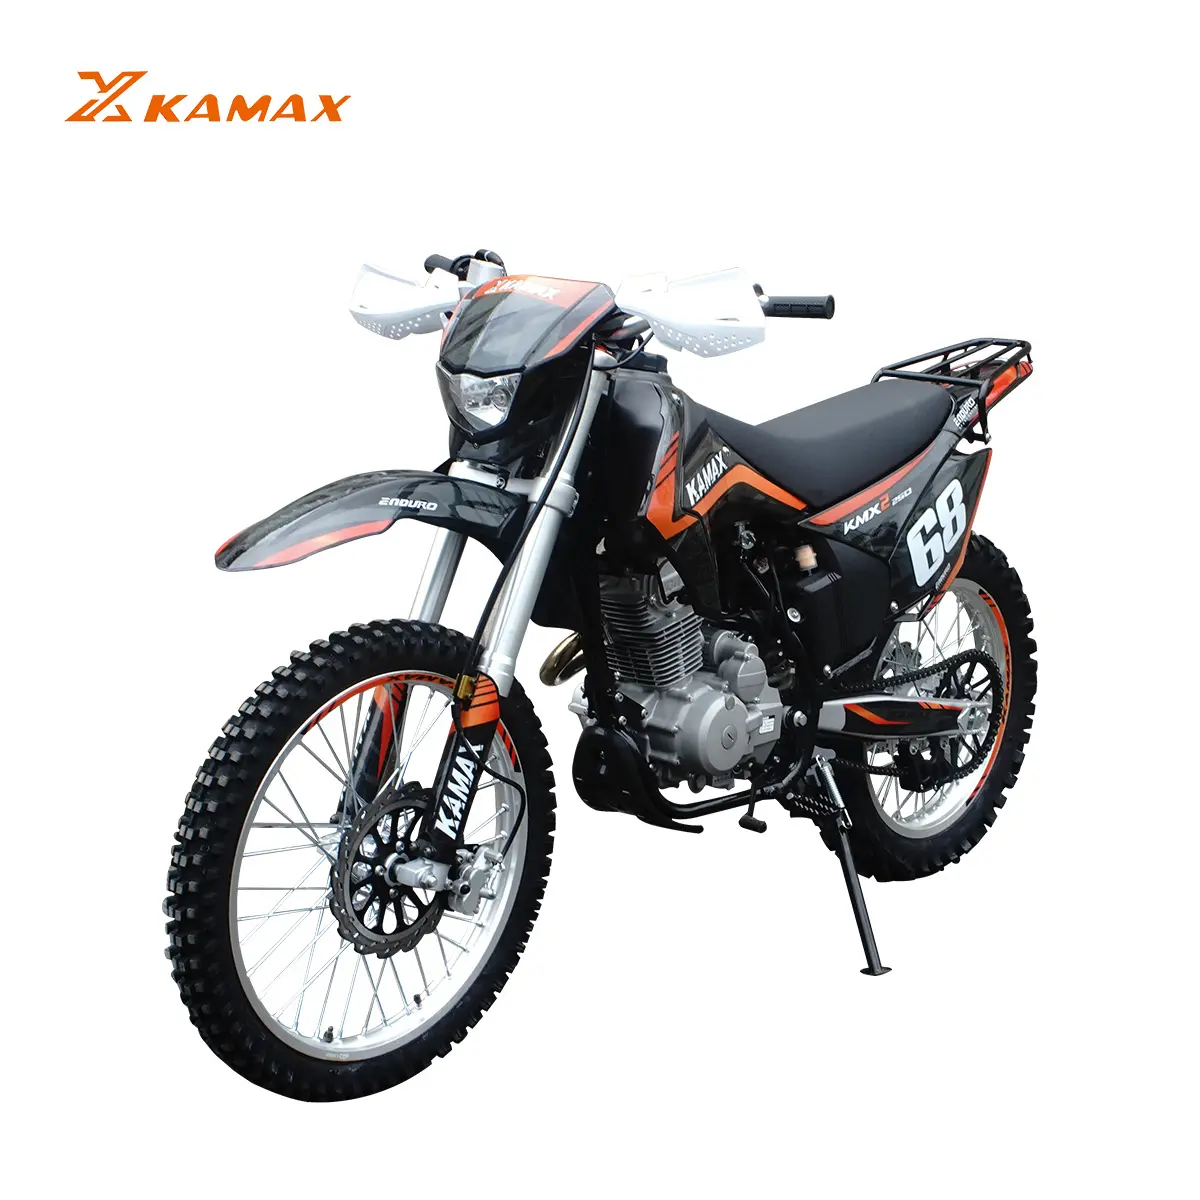 KAMAX Moto tout-terrain 250cc KMX-2 autres motos 4 temps Enduro Moto Cross pas cher à vendre fabriqué en Chine pour adultes